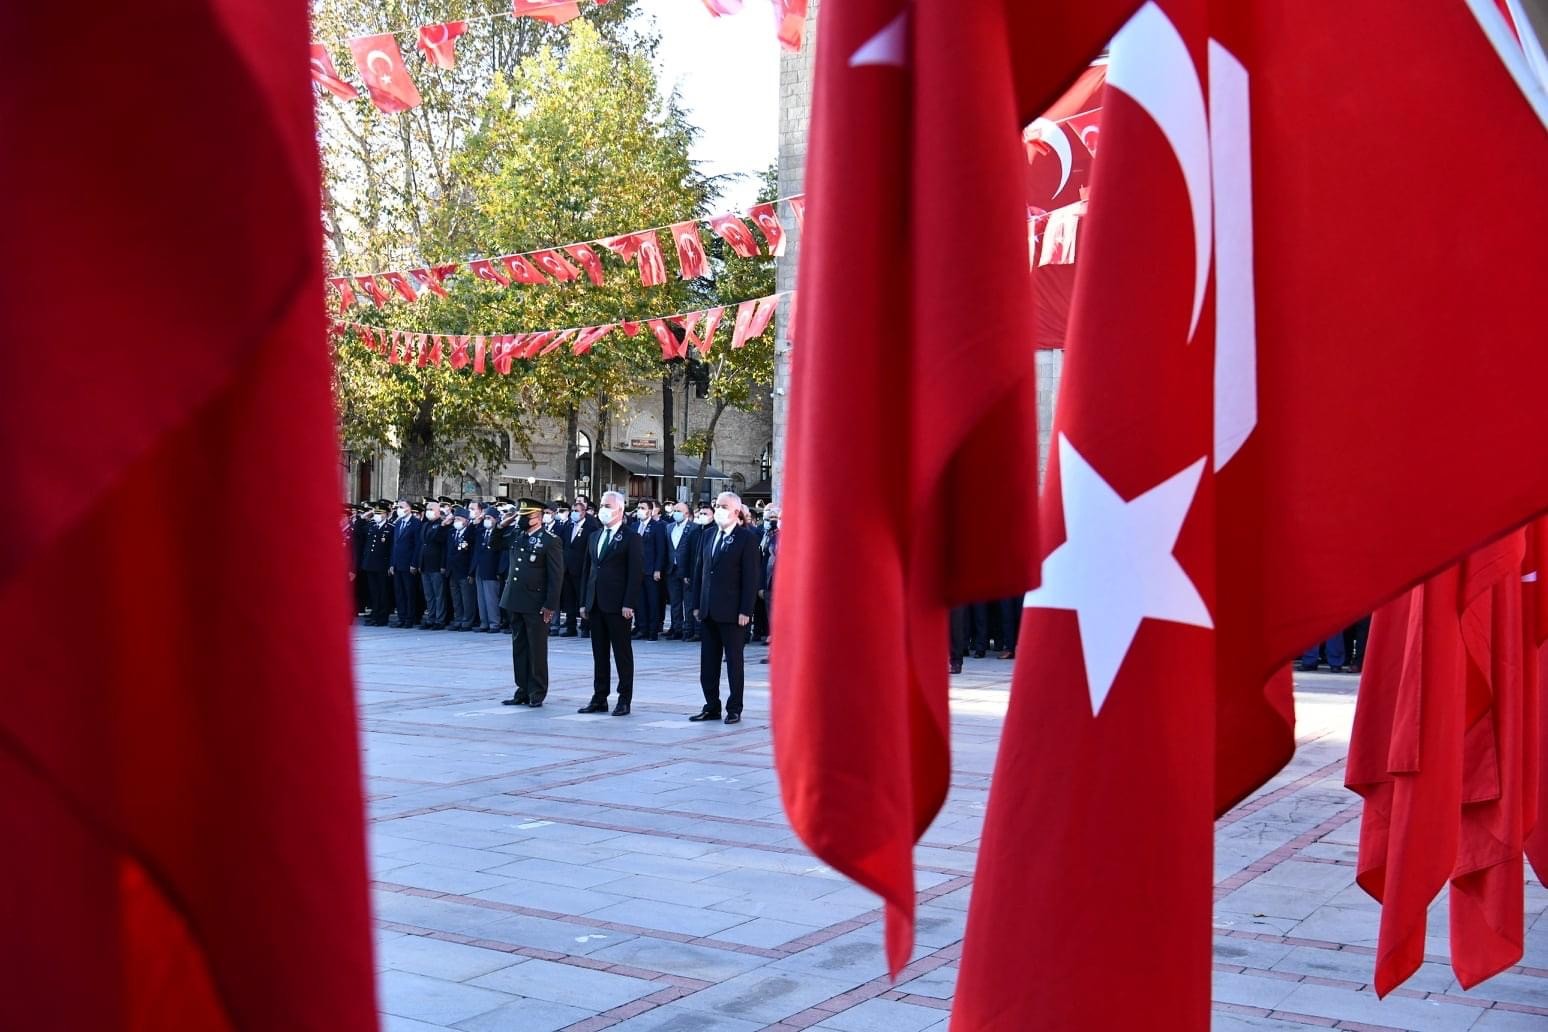 Gazi Mustafa Kemal Atatürk, Isparta’da saygı ve minnetle anıldı #isparta